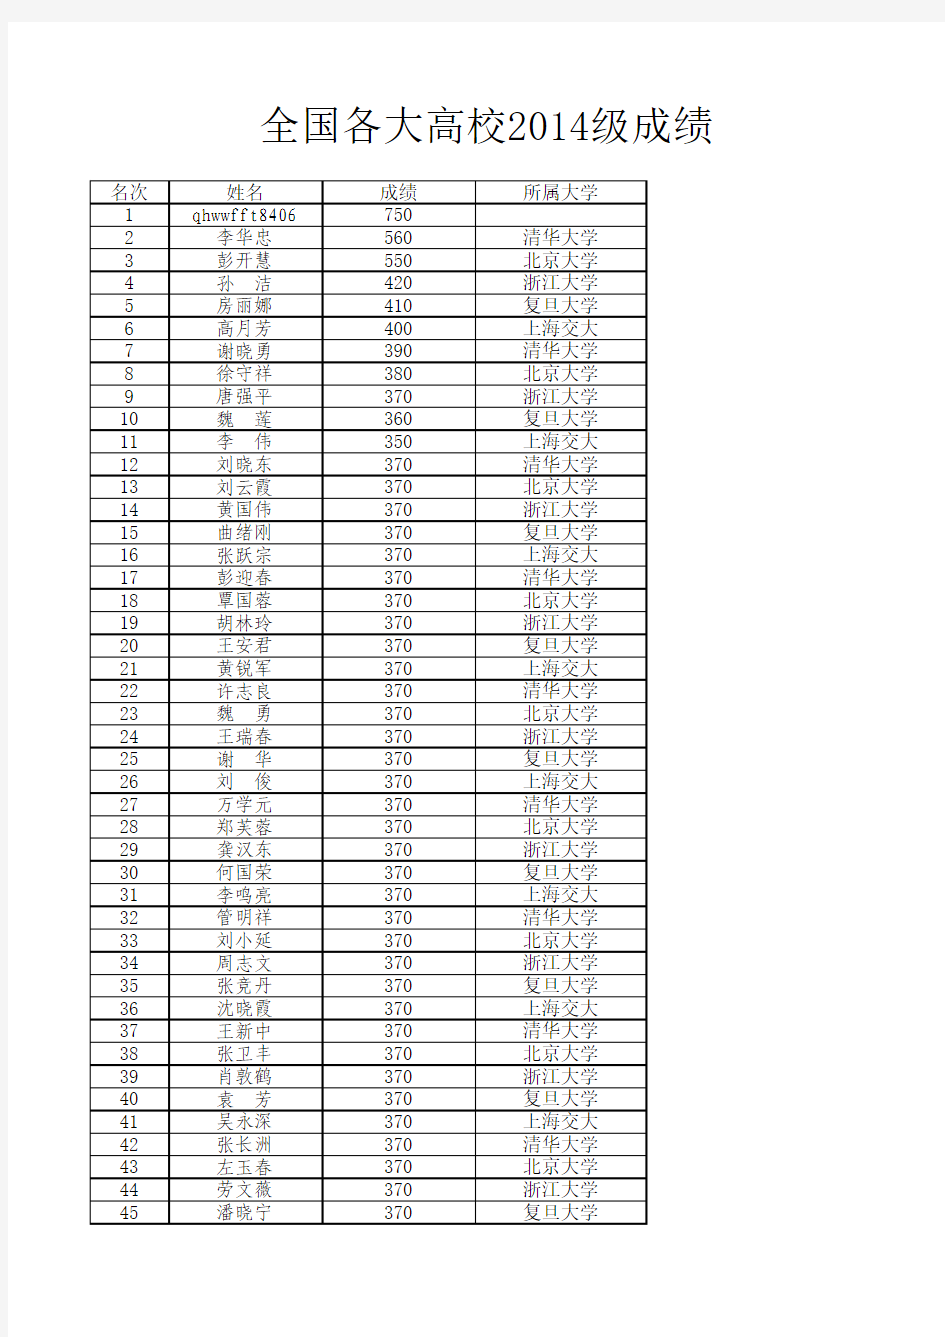 2014级学生成绩单(排名第一)